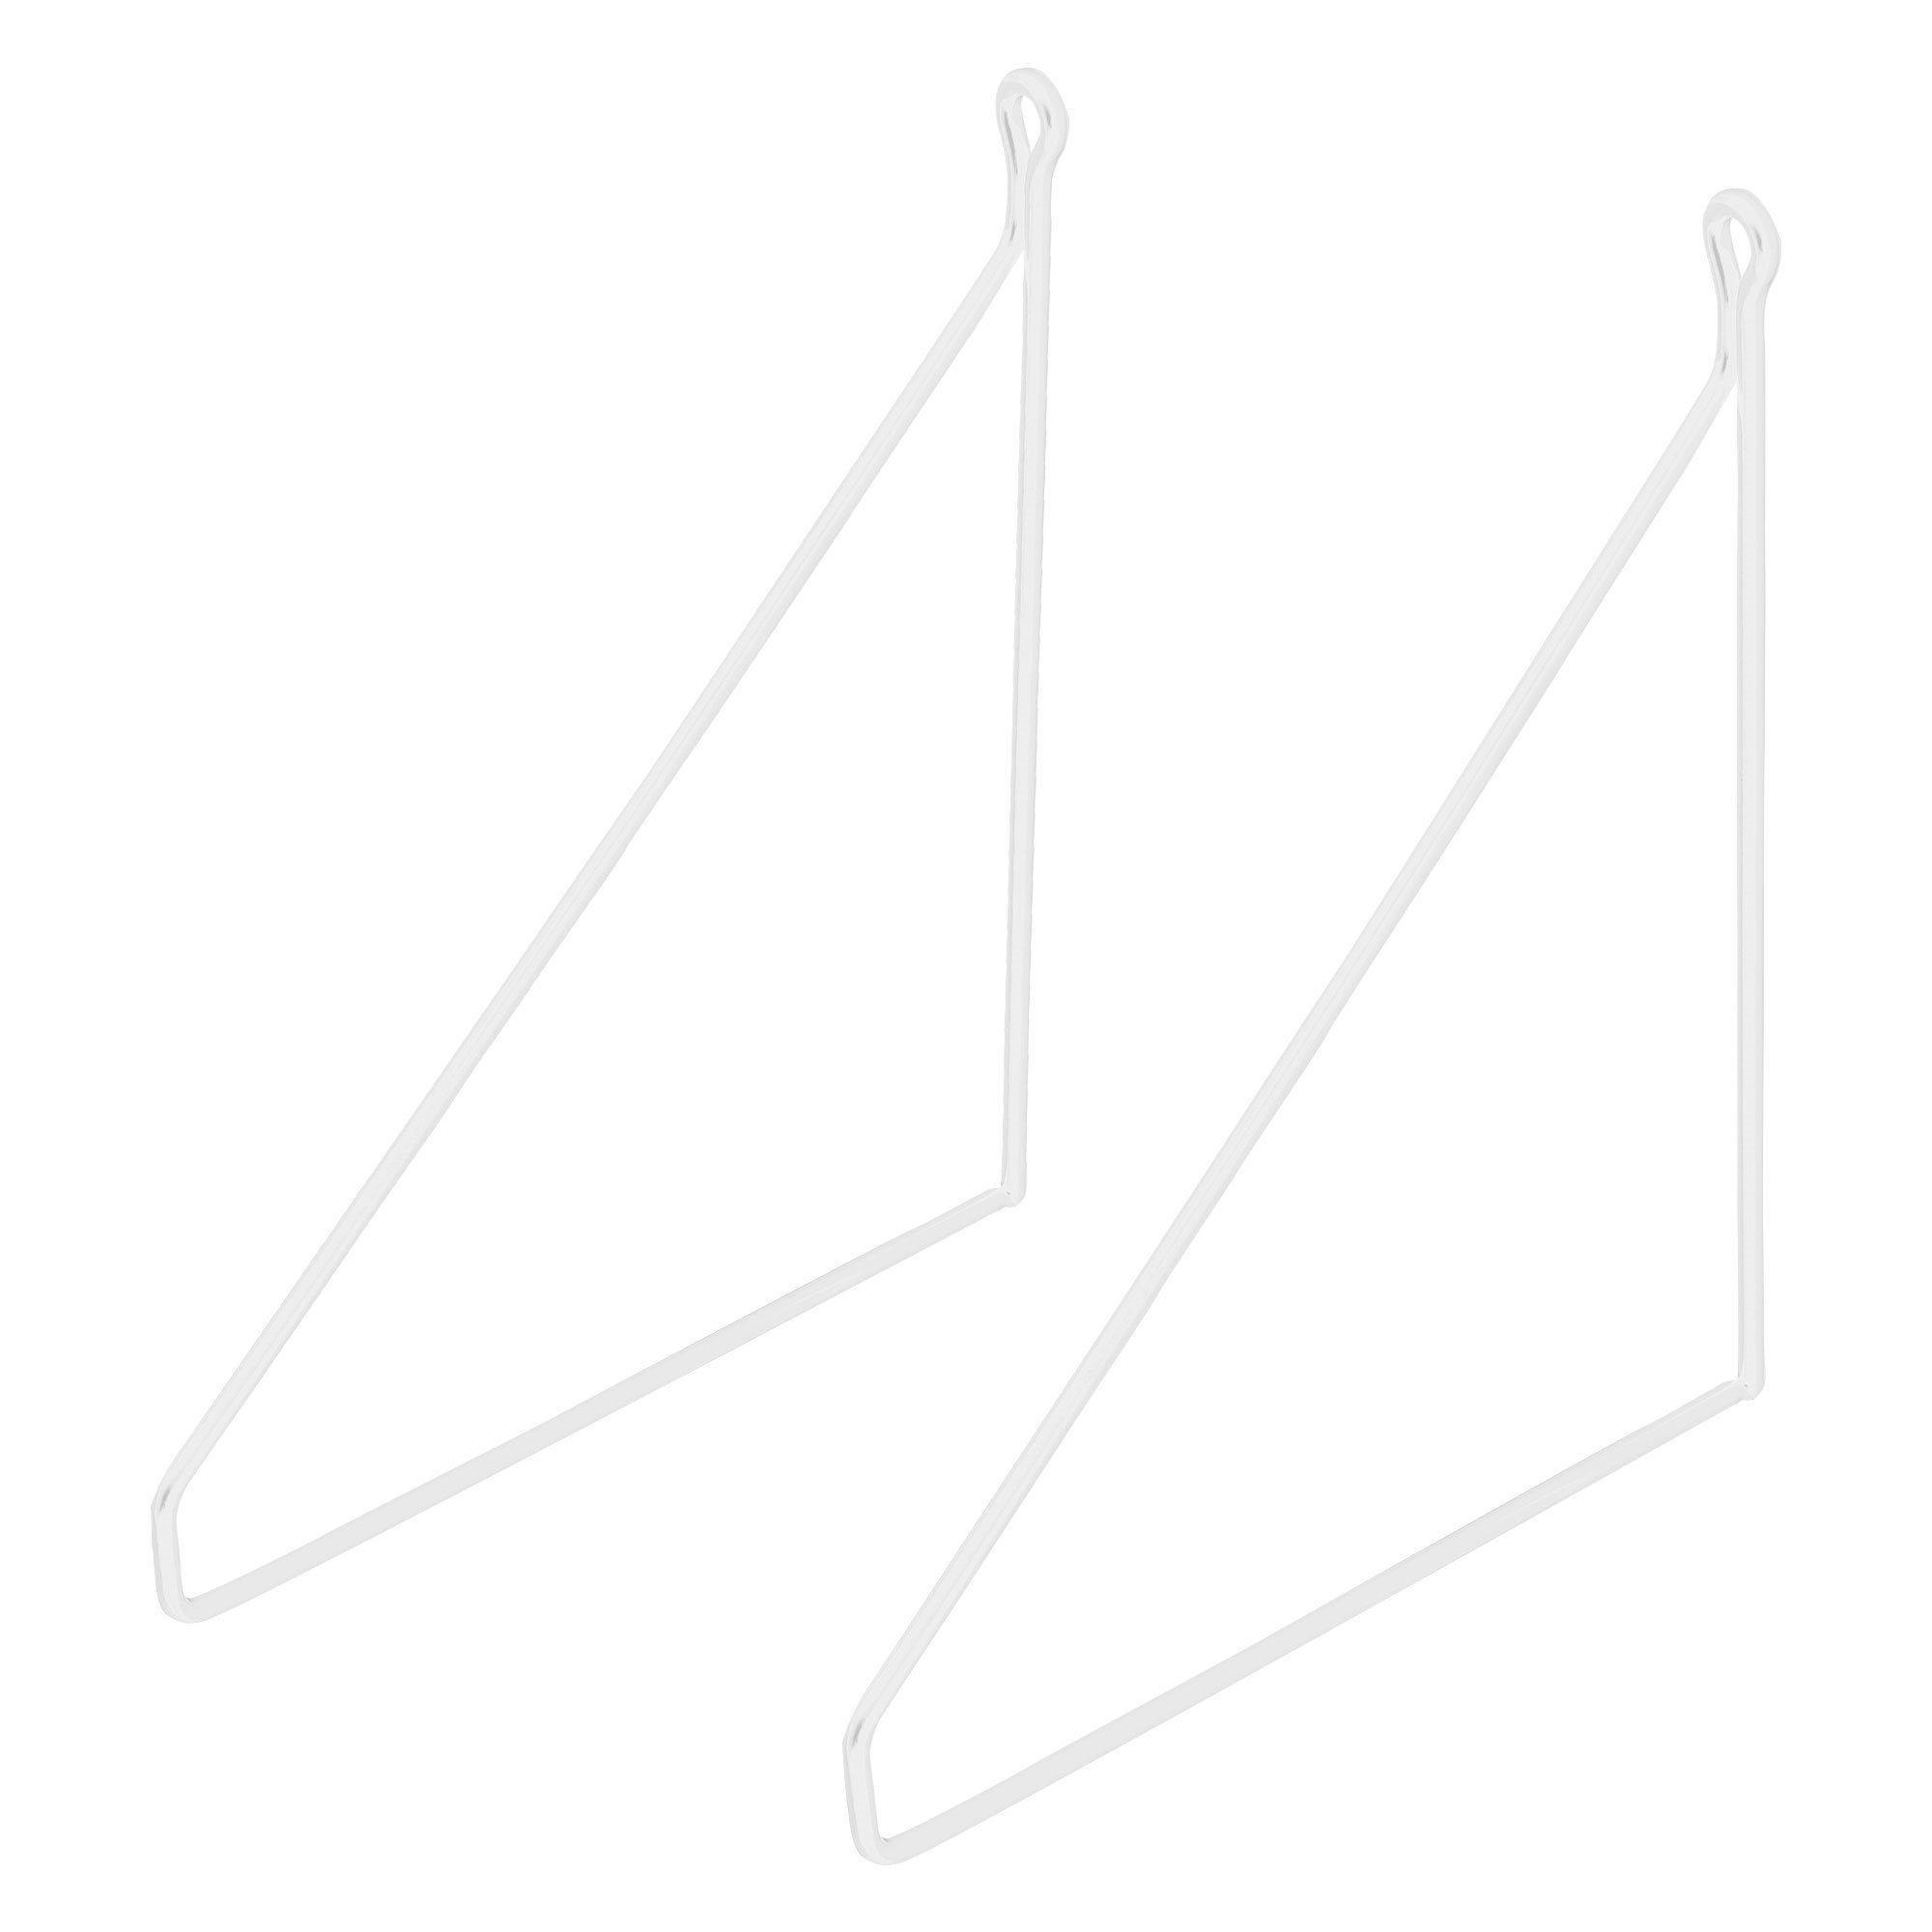 2 Draht Wandhalterung Regalwinkel ML-DESIGN 200mm Metall Dreieckig Regalhalterung Schwebe Weiß Stück Wandmontage Regalträger, Regal